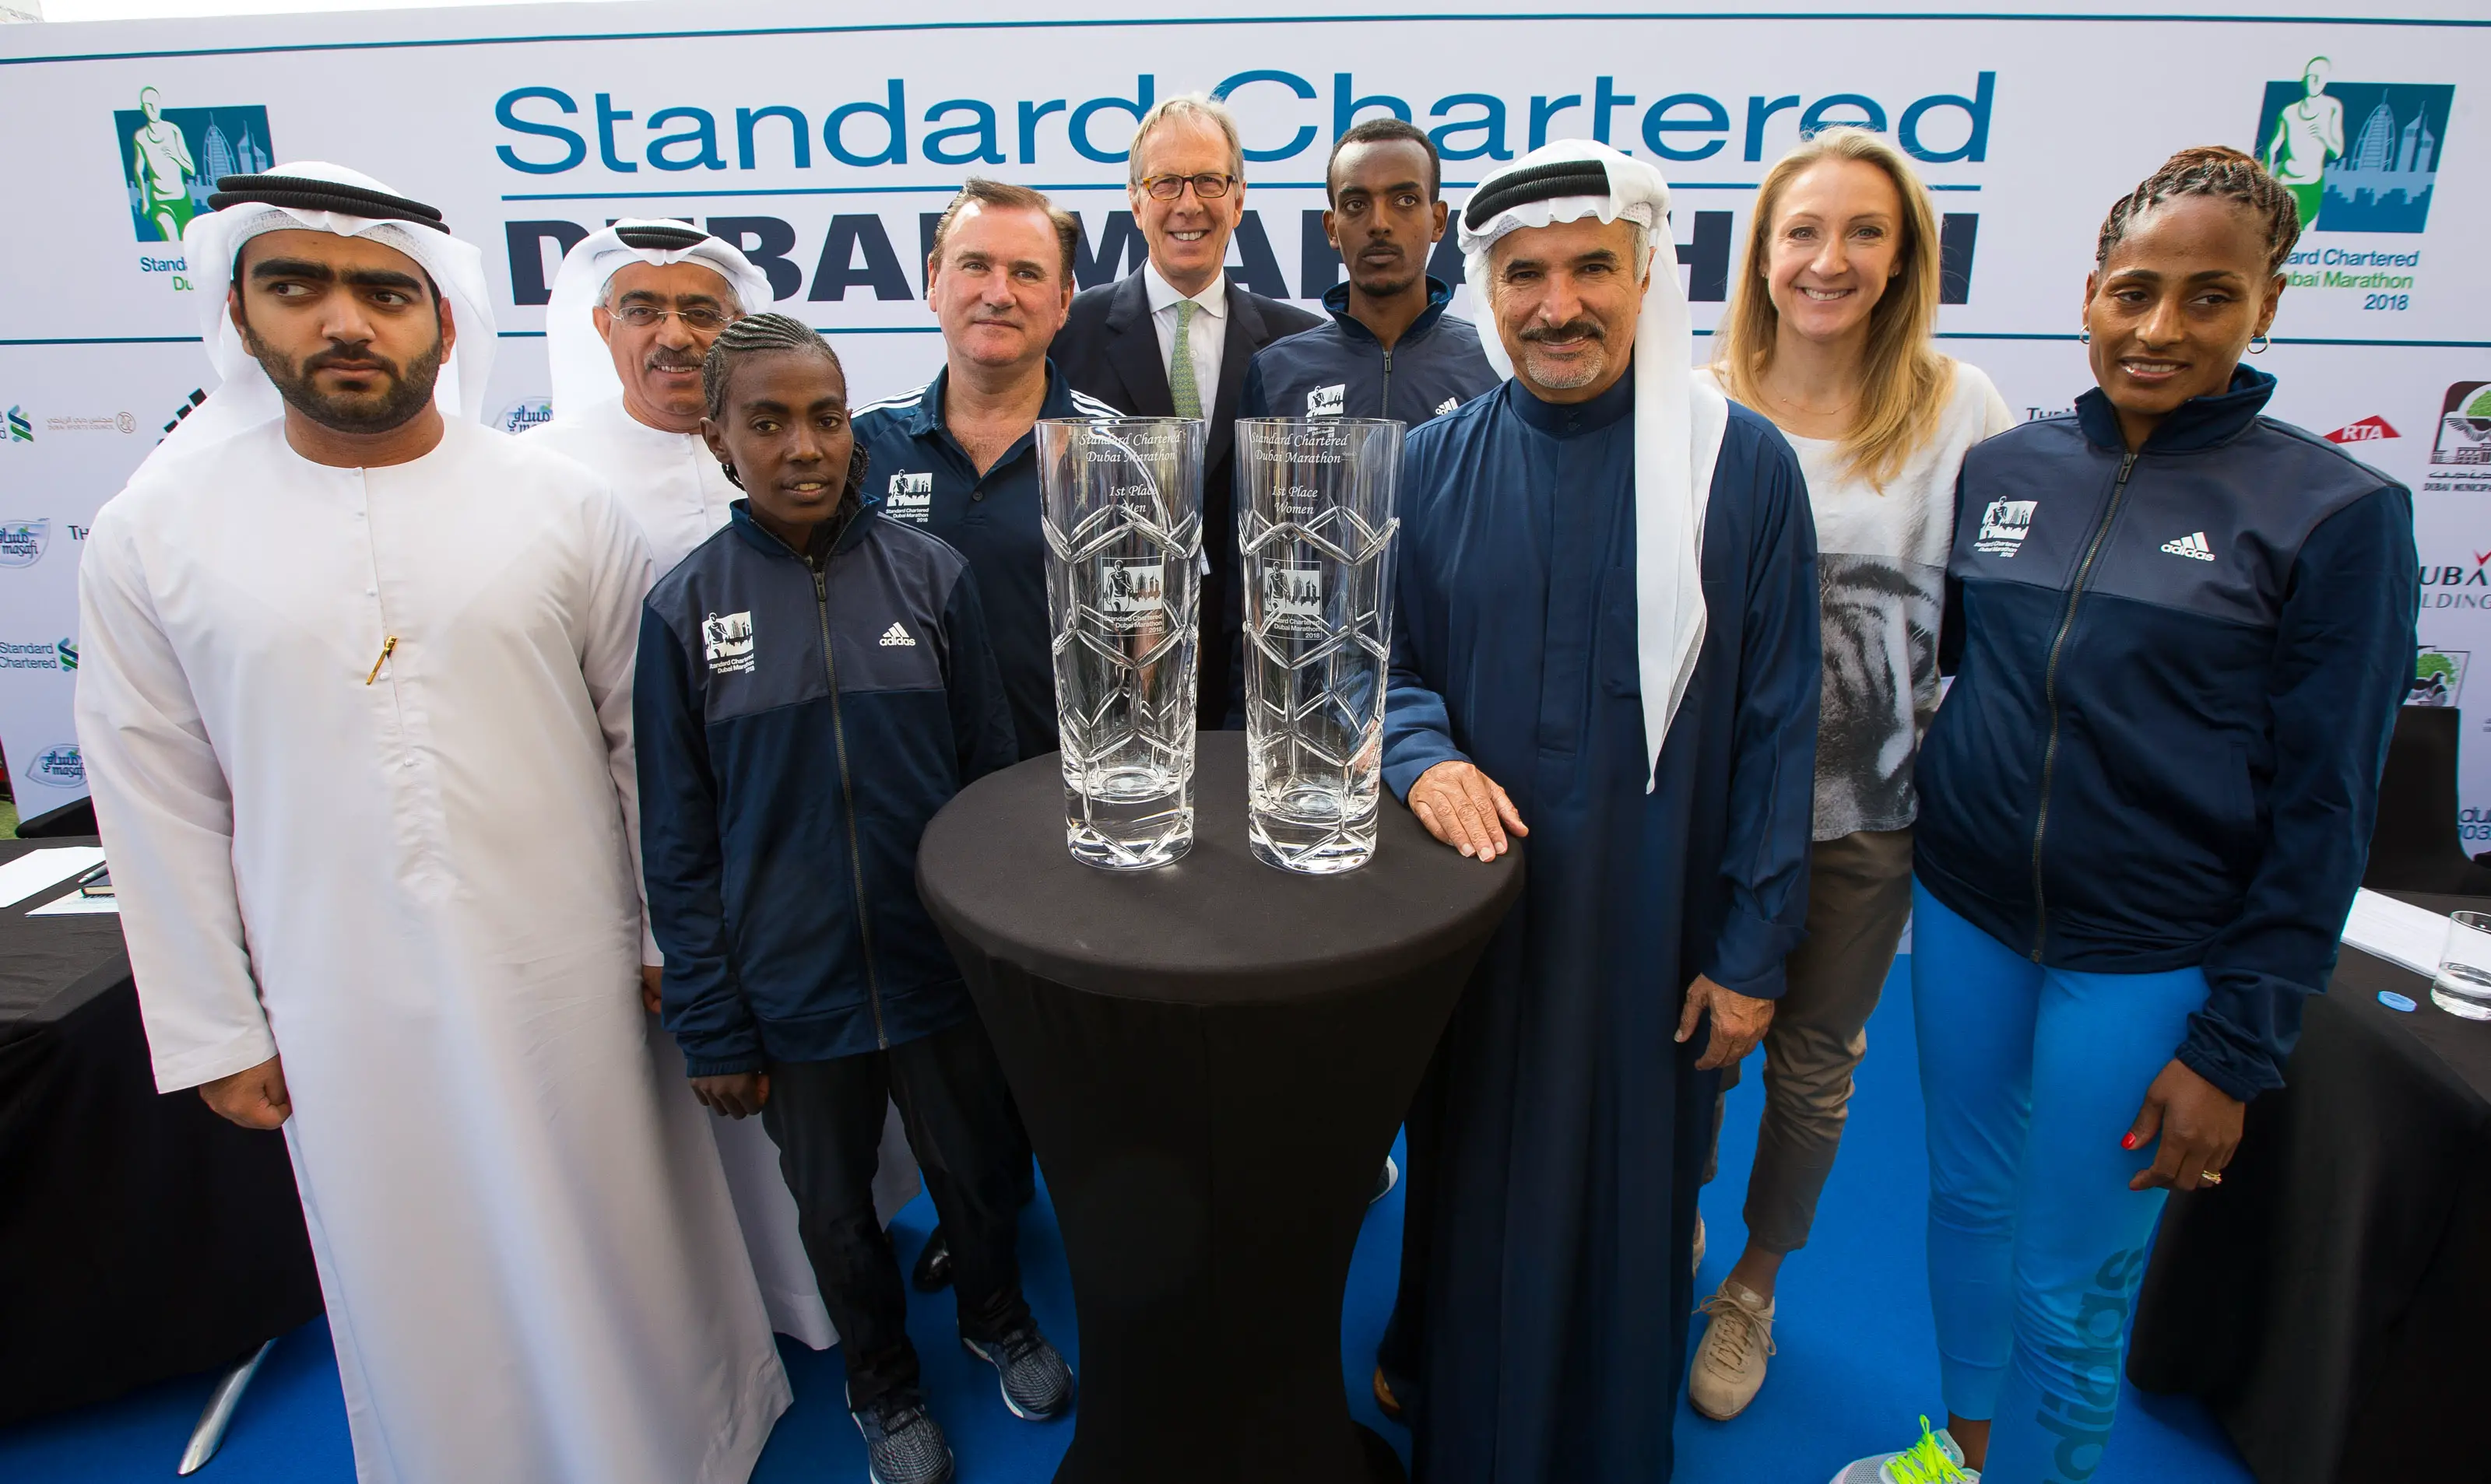 Les héros du sport se préparent à défendre leurs titres au marathon de Standard Chartered Dubai